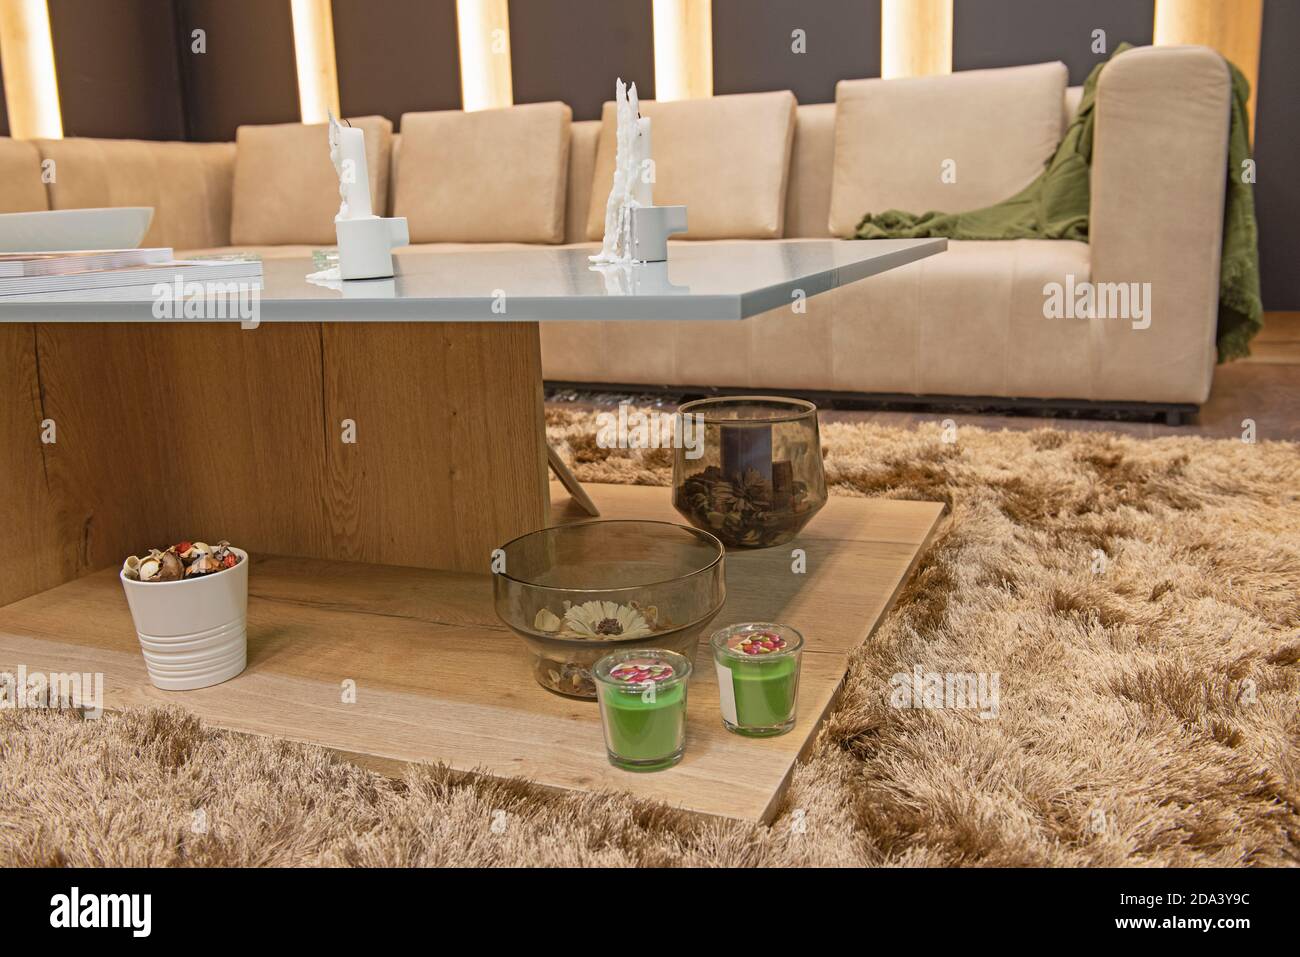 Wohnzimmer Lounge-Bereich in Luxus-Wohnung zeigen Hause zeigen Inneneinrichtung mit Holzkouchtisch auf Teppich Stockfoto